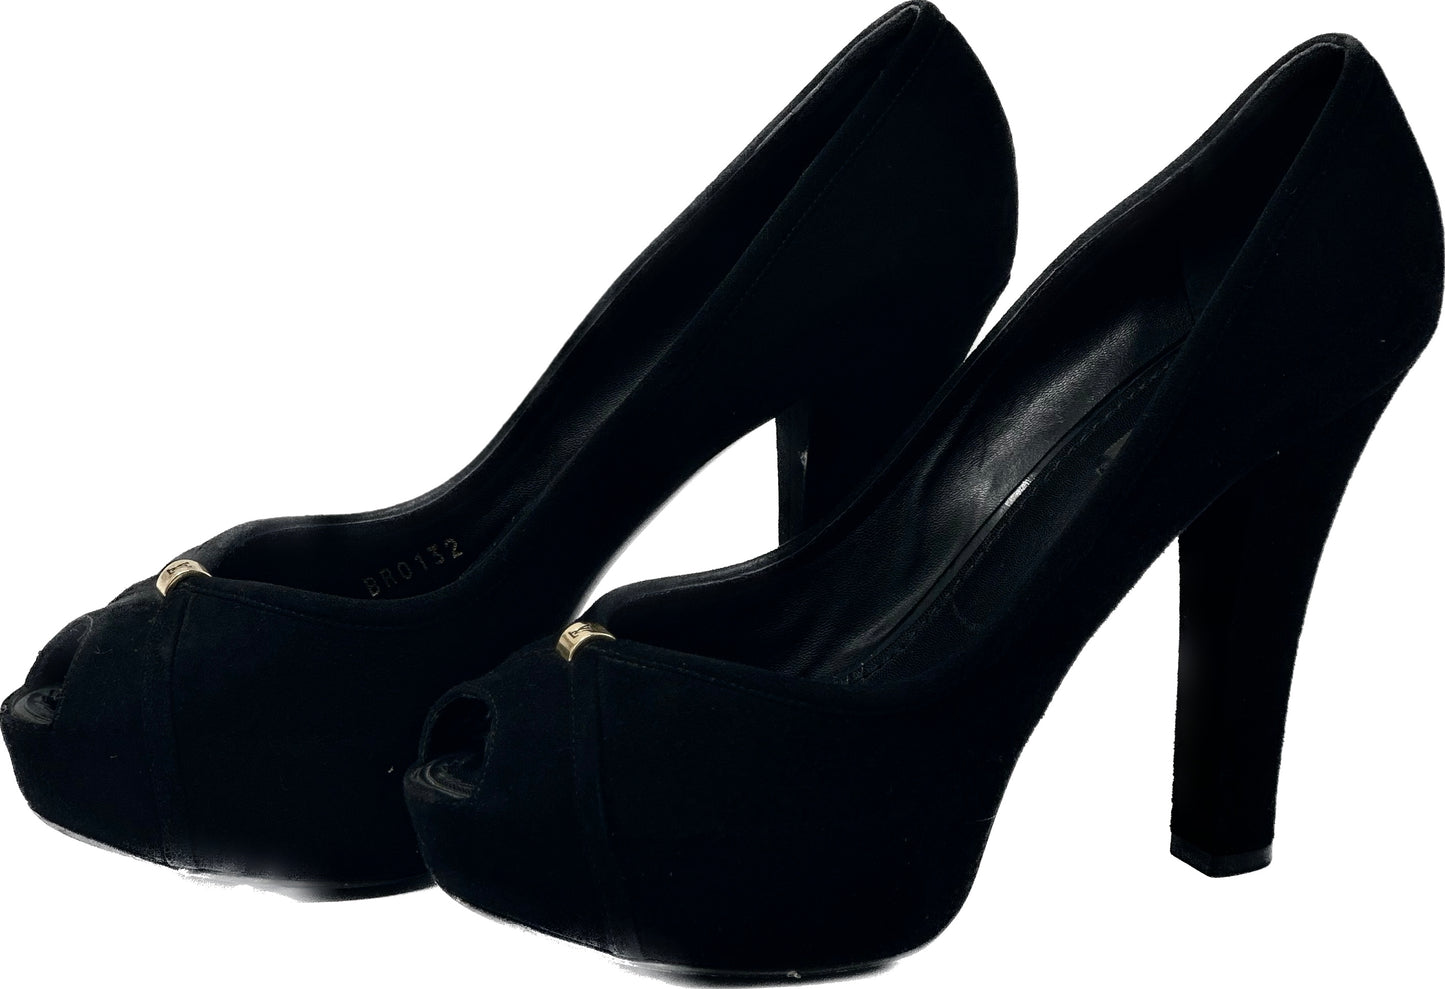 נעלי משאבת פלטפורמת זמש שחורות של לואי ויטון עם פירוט מתכת LV